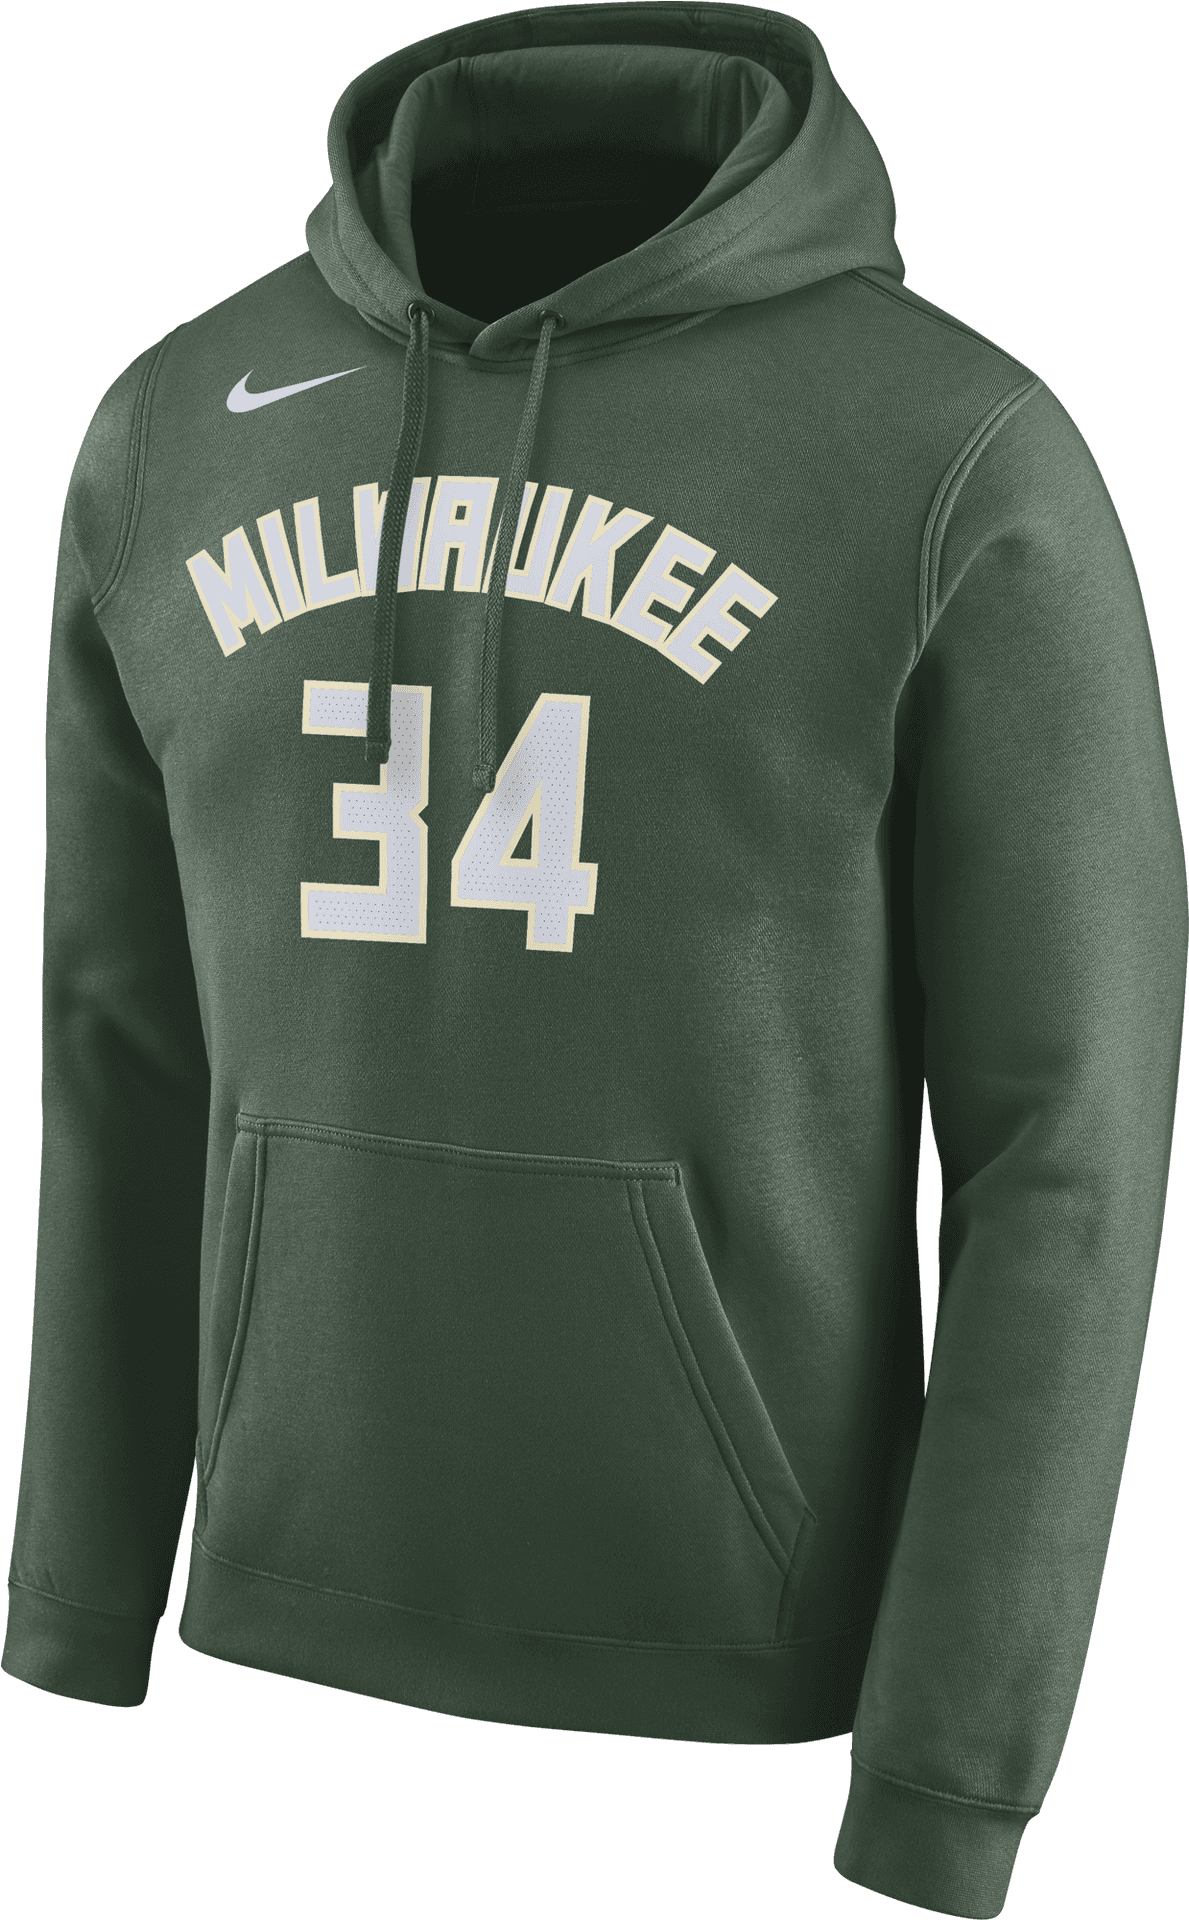 Milwaukee34 Nike Hoodie PNG